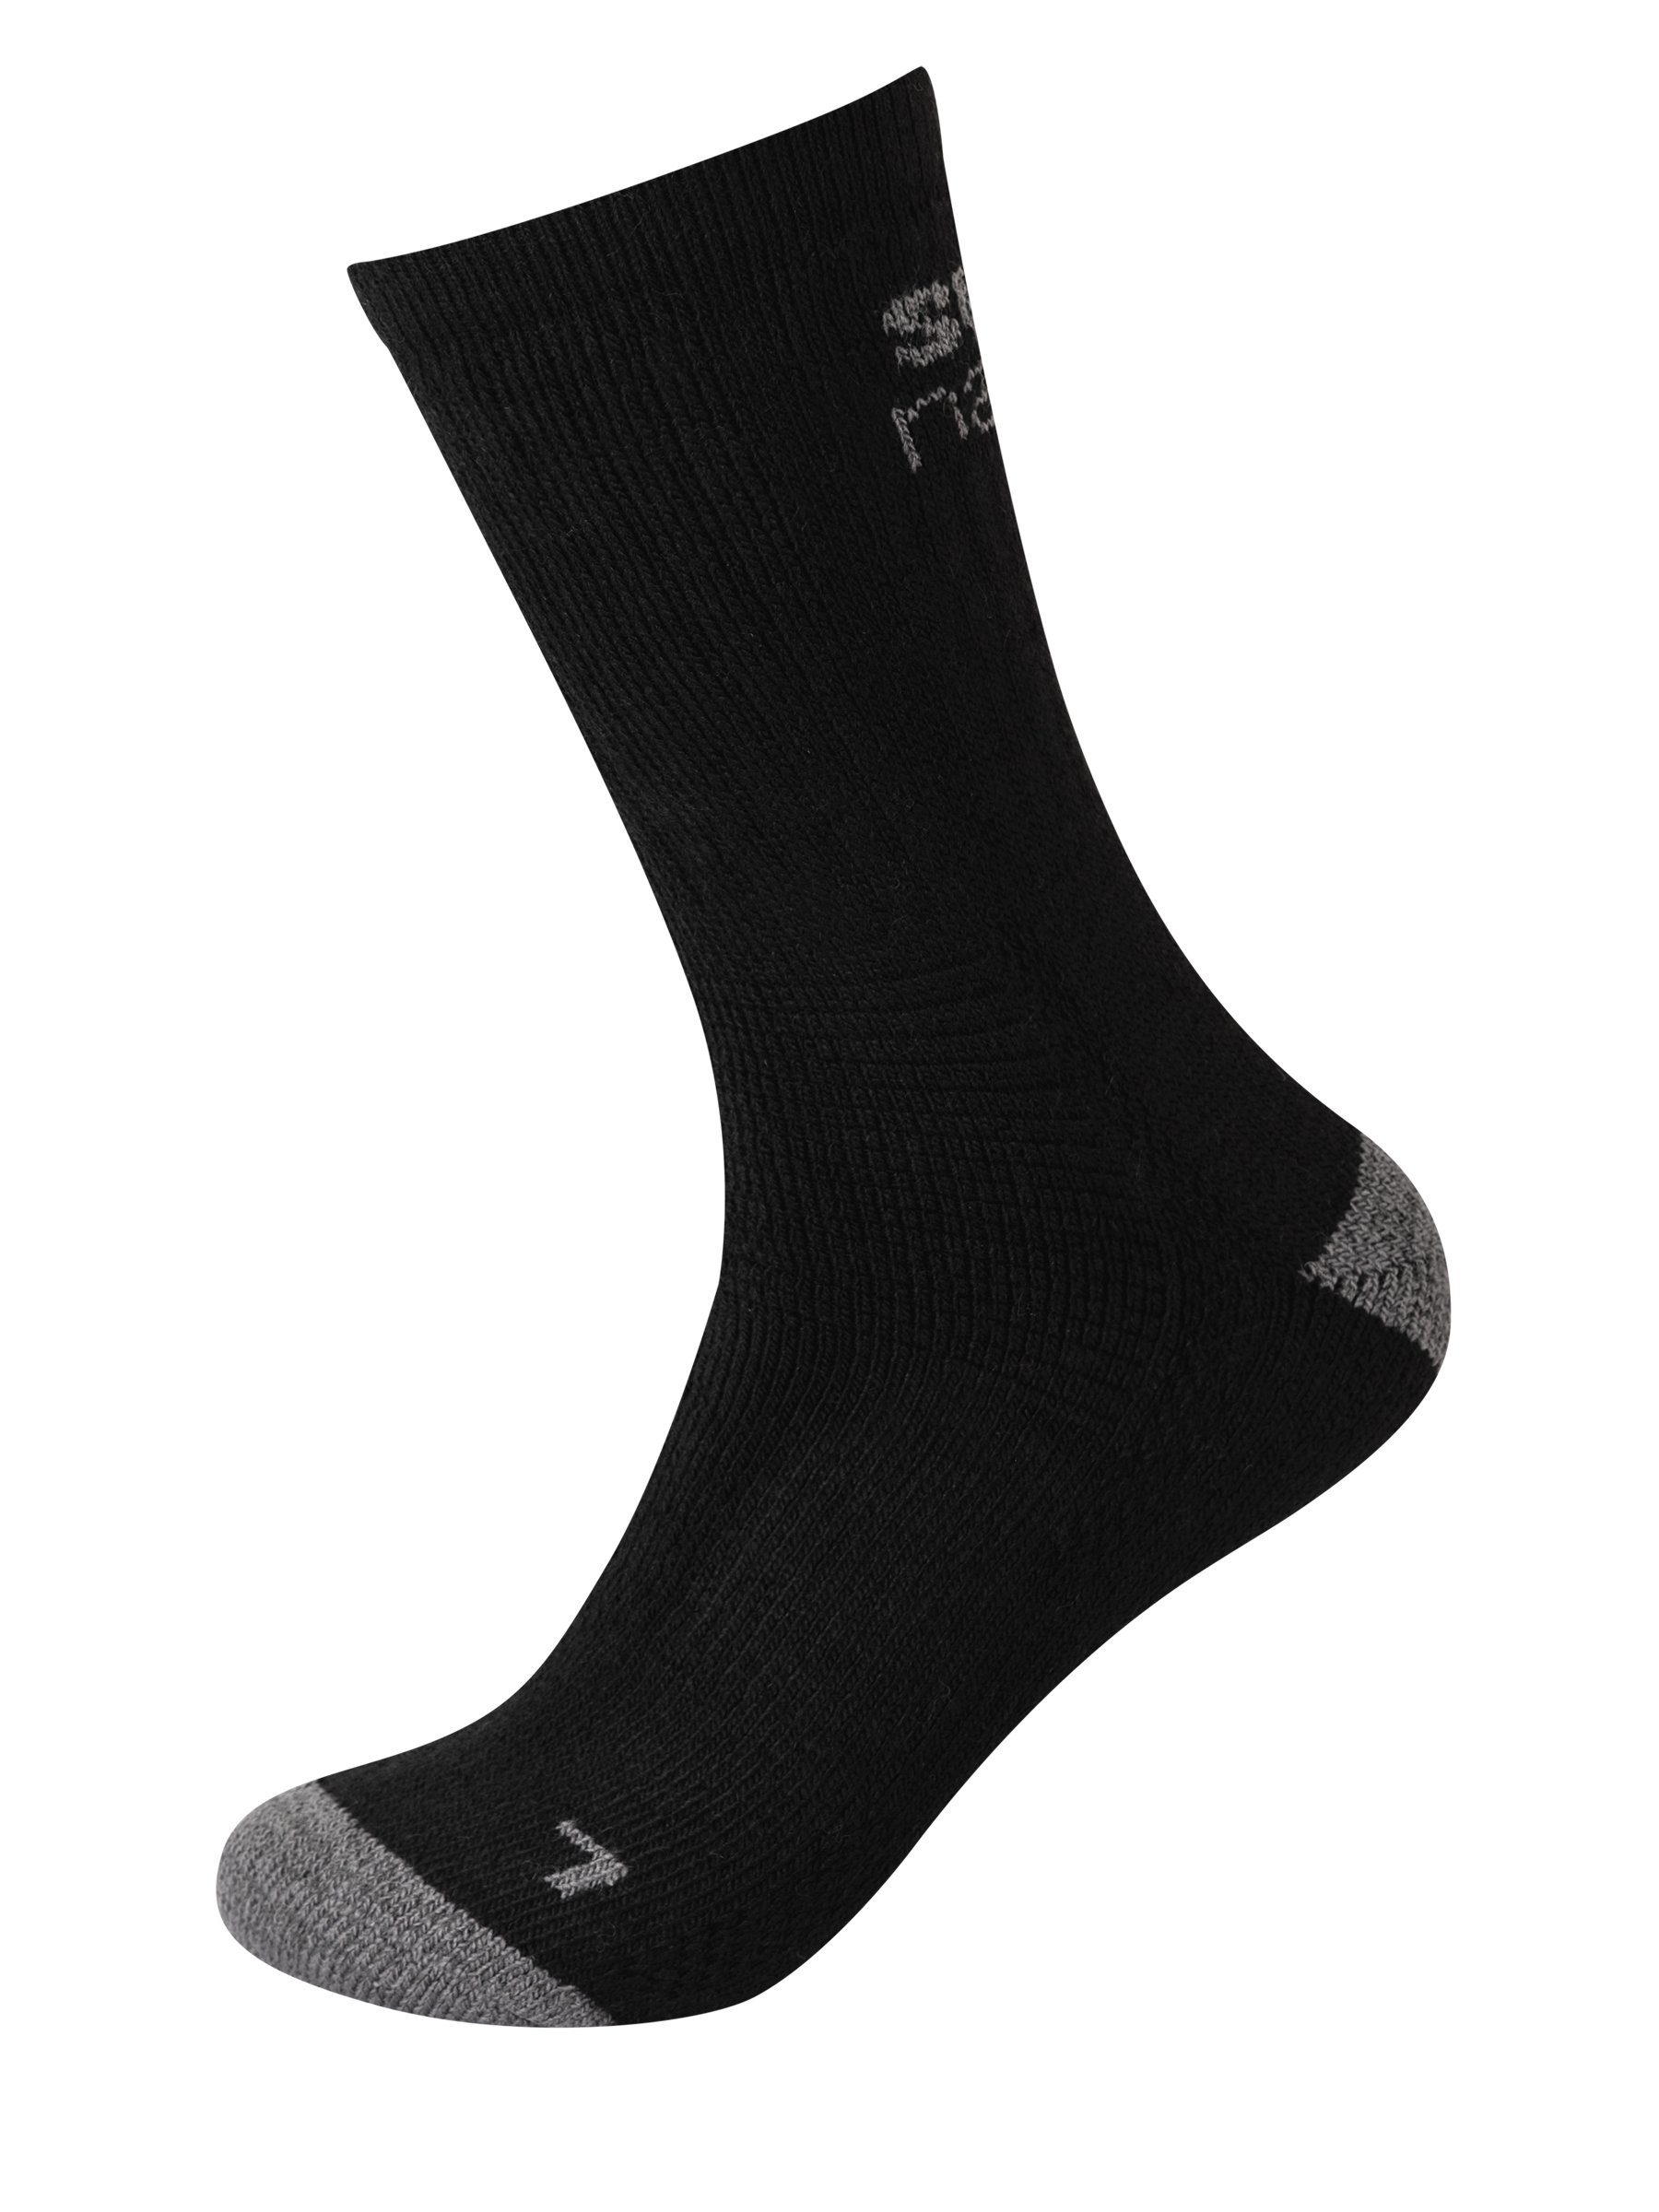 SUPER.NATURAL Sportsocken Alpaka Socken SN COSY SOCKS (2-Paar) No smell-no worries, Alpaka-Materialmix Jet Black/Vapor Grey